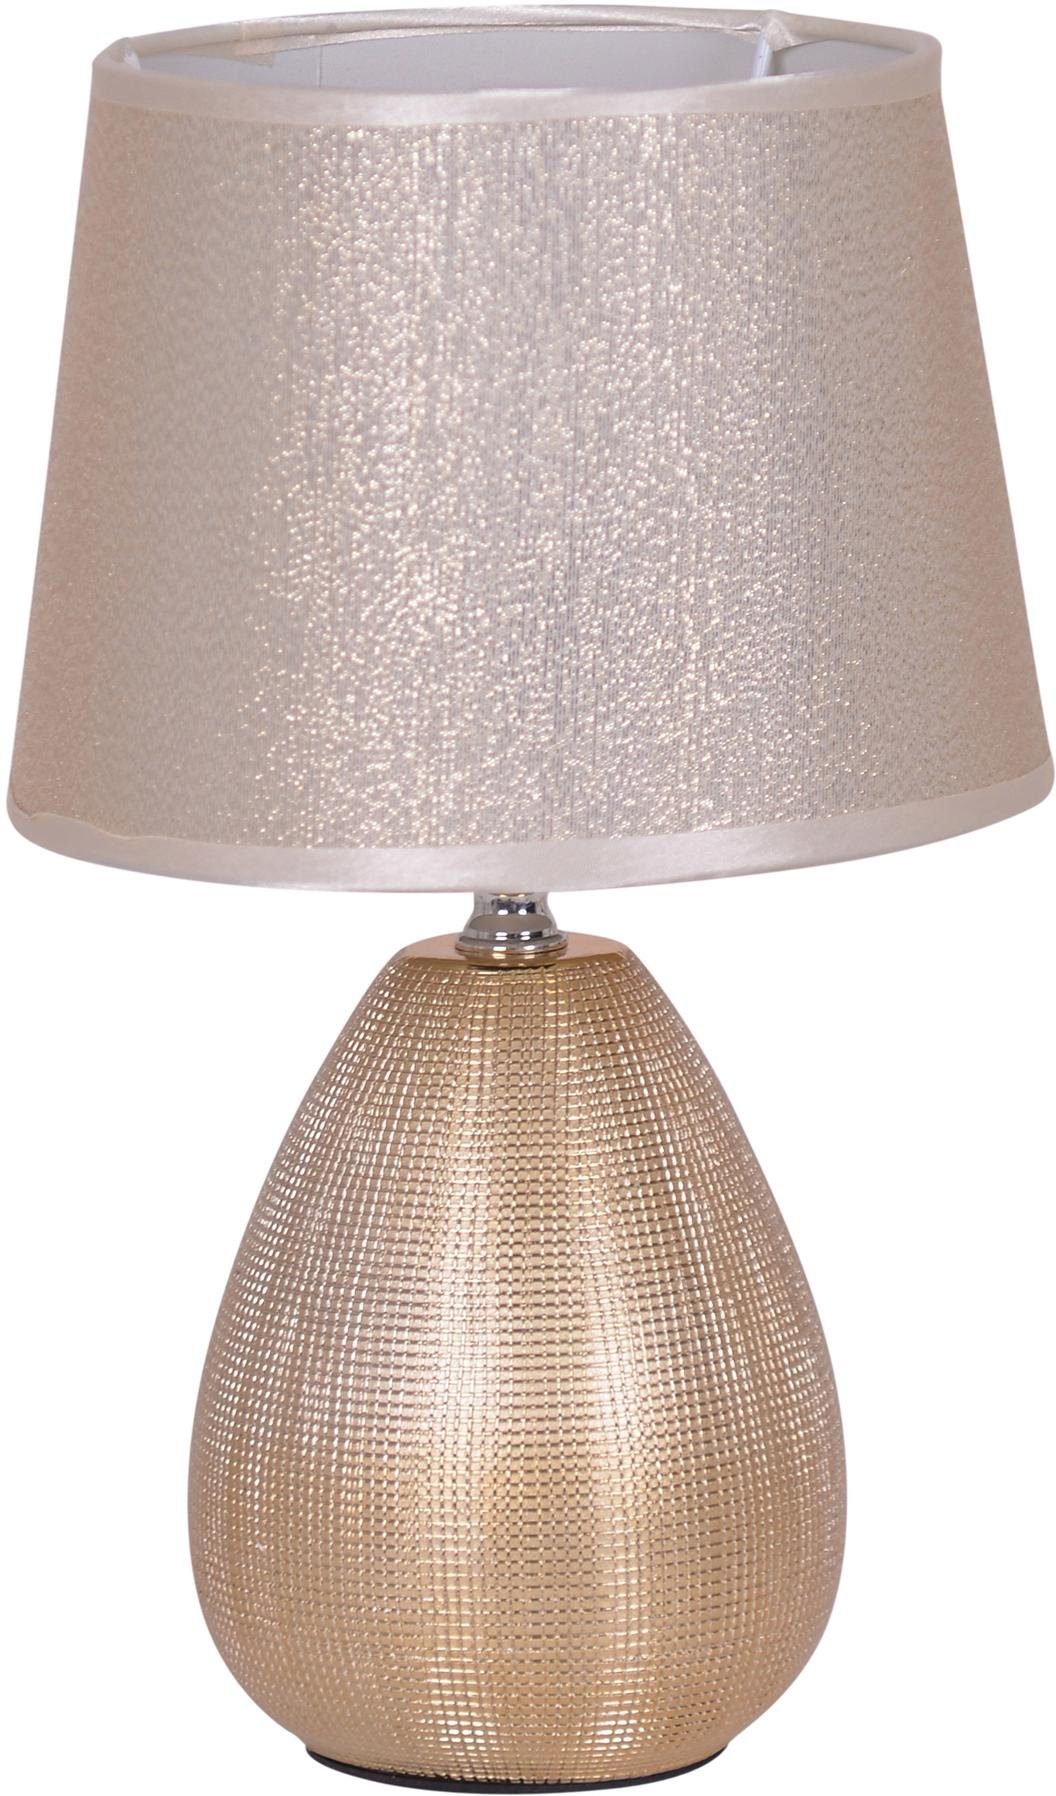 naeve tafellamp simply ceramics goud